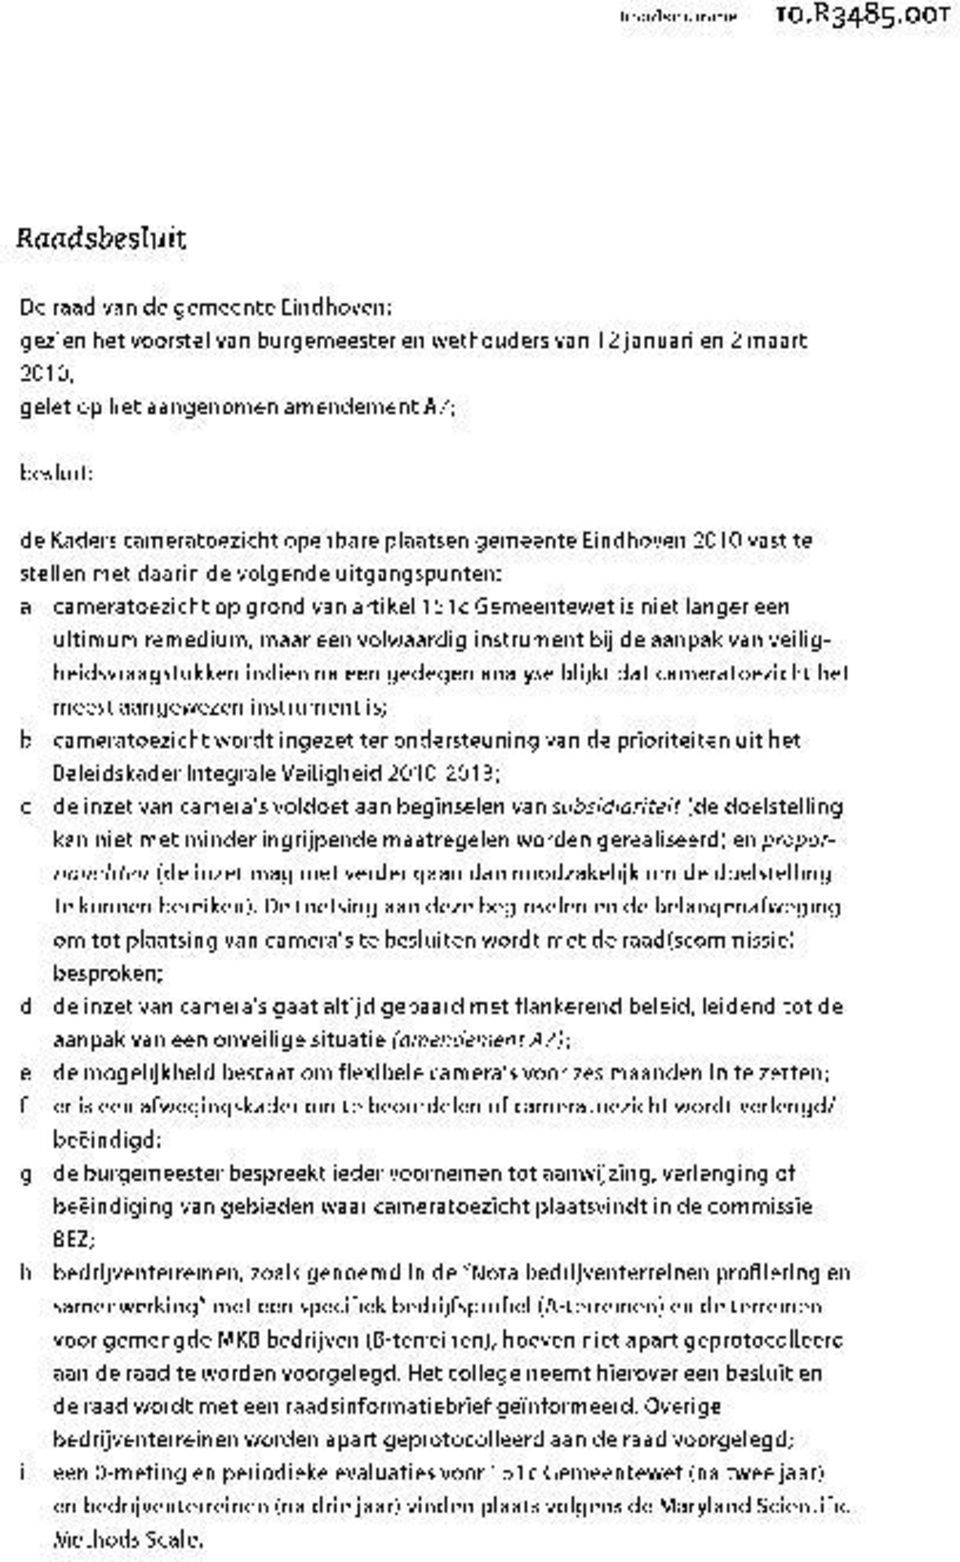 cameratoezicht openbare plaatsen gemeente Eindhoven 2010 vast te stellen met daarin de volgende uitgangspunten: a cameratoezicht op grond van artikel 151c Gemeentewet is niet langer een ultimum